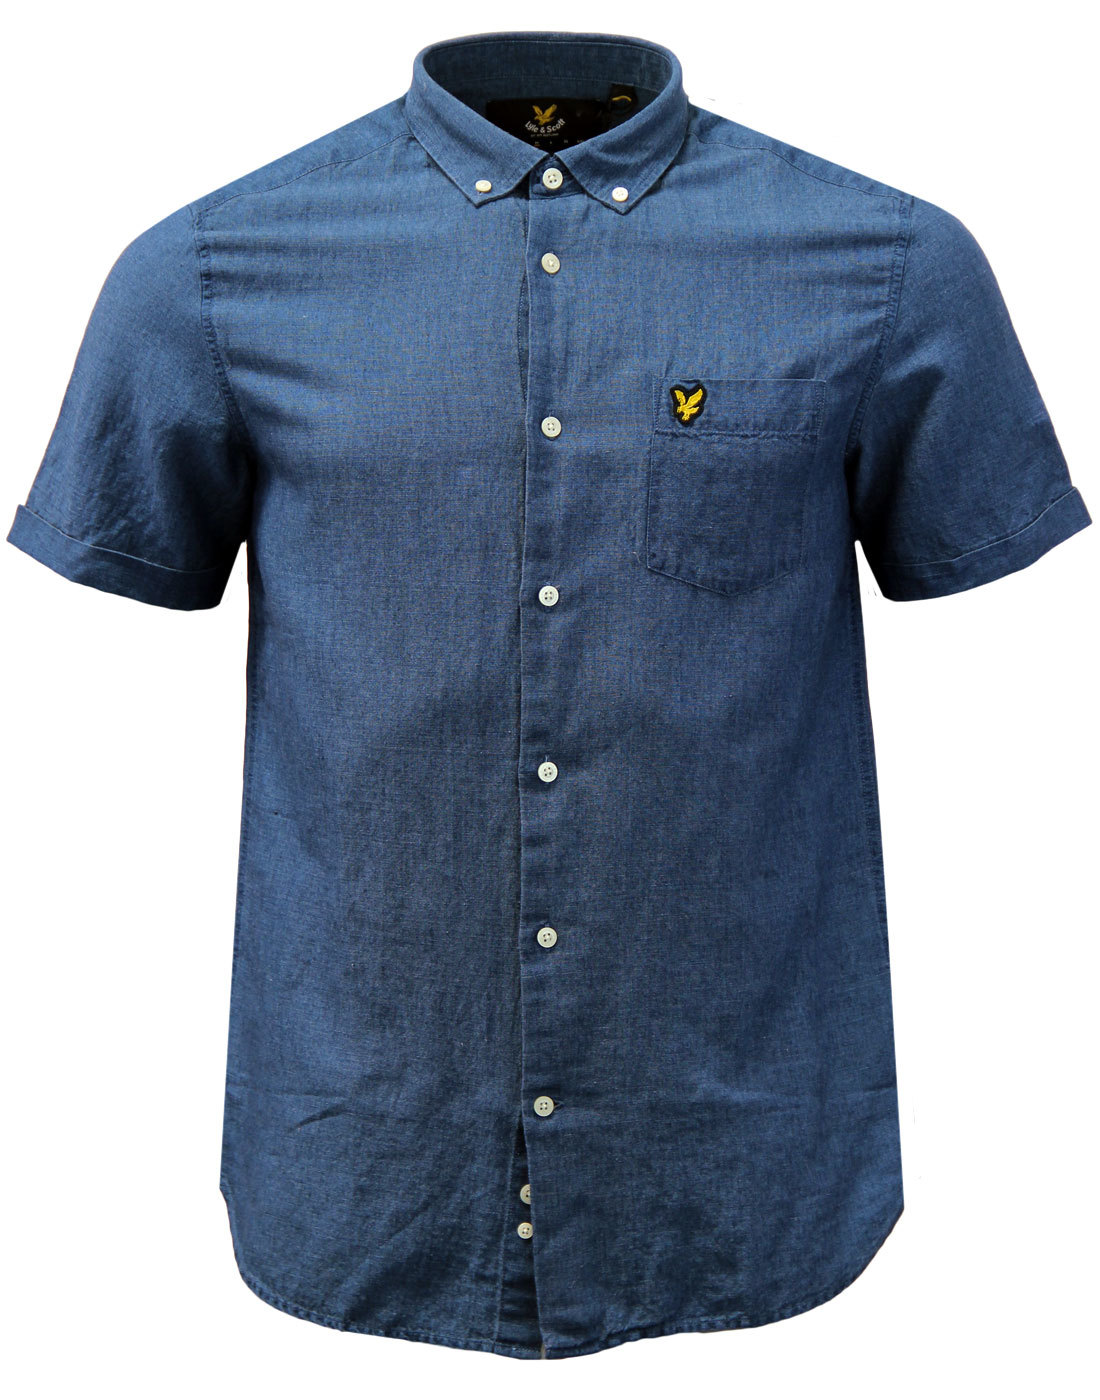 LYLE & SCOTT Retro Mod Textured Button Down Linen Shirt in Indigo